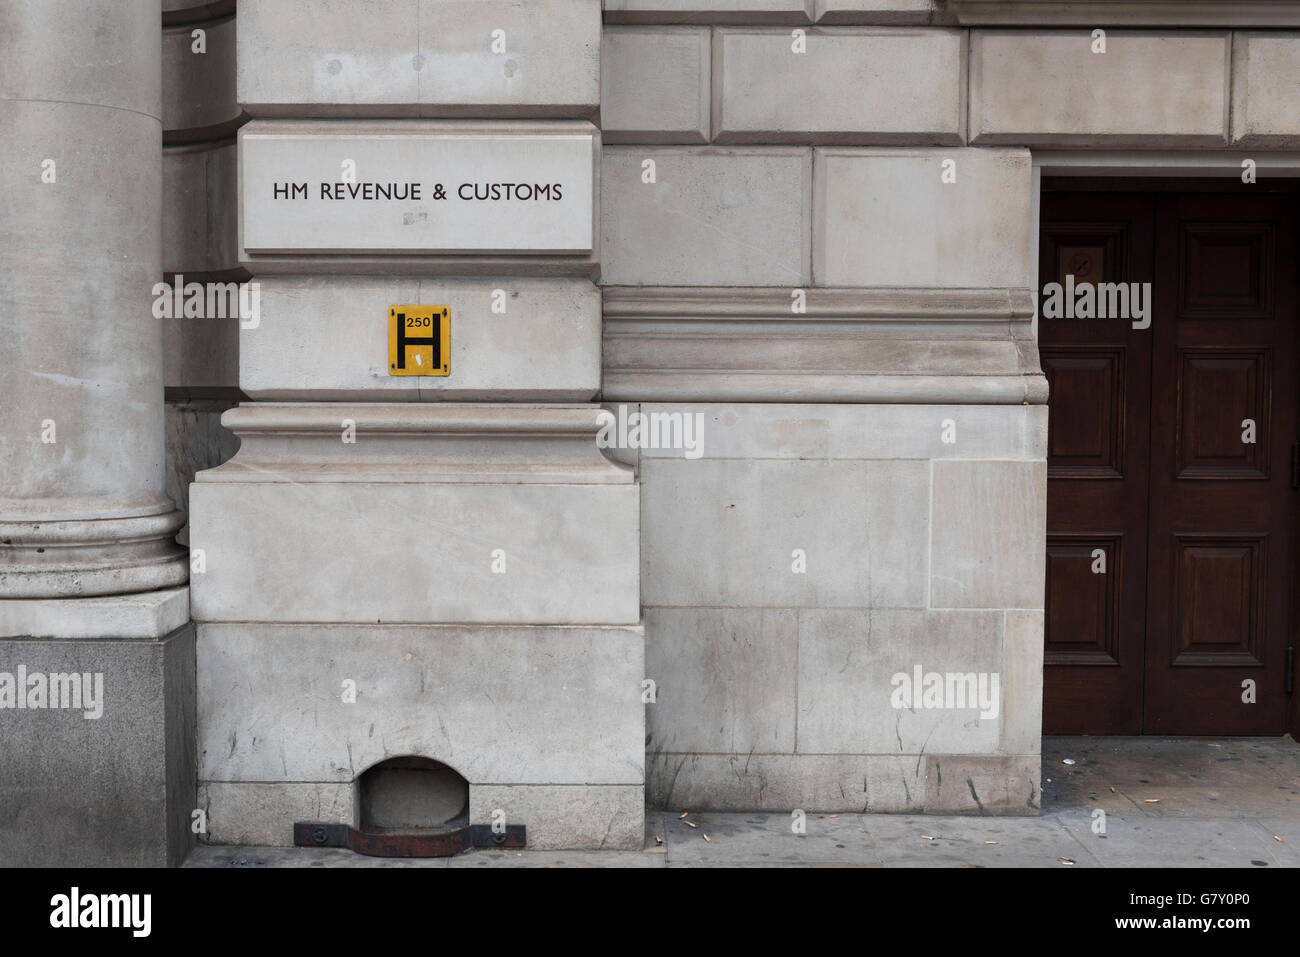 London, UK.  27. Juni 2016.  HM Revenue and Customs (HMRC) Büro sieht in Whitehall.  Die britische Steuerbehörde hat berichtet, dass "keine Gesetze sich geändert haben" und steuerrechtlichen Bestimmungen bleiben gleich nach dem EU-Referendum.  Allerdings erwarten die Kommentatoren Steuergesetzänderungen nach der Ernennung eines neuen Premierministers.  Bildnachweis: Stephen Chung / Alamy Live News Stockfoto